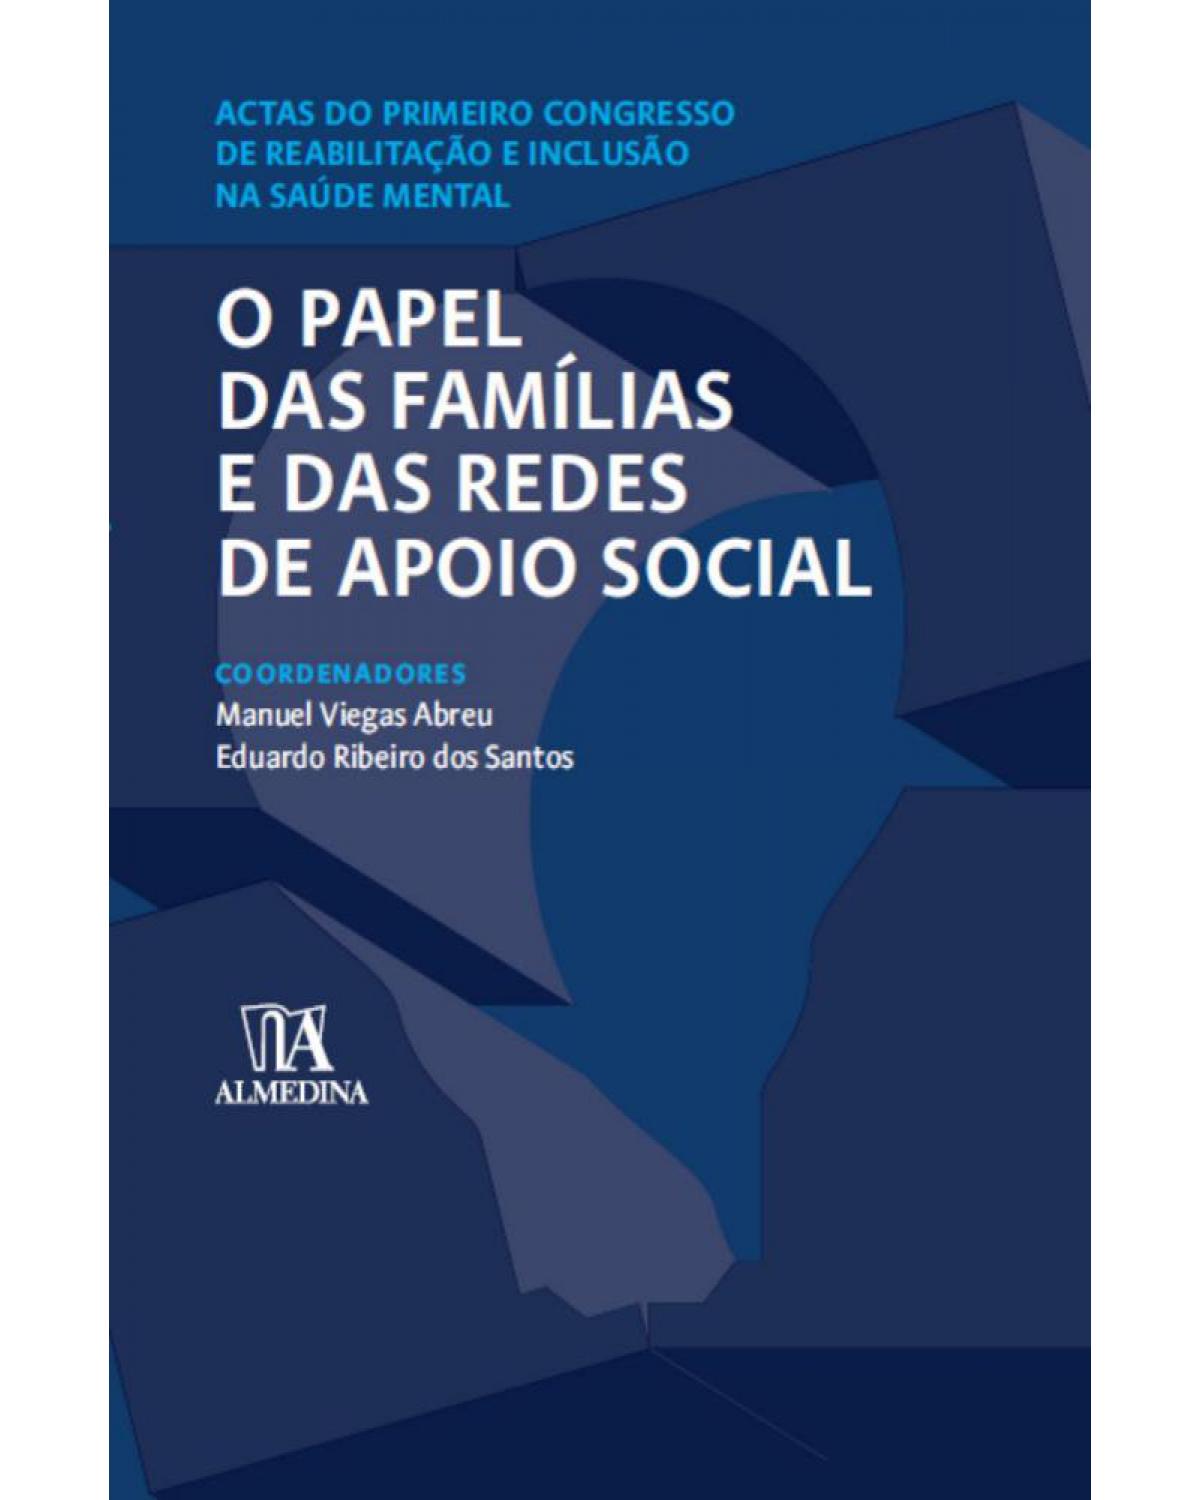 O papel das famílias e das redes de apoio social - actas do primeiro congresso de reabilitação e inclusão na saúde mental - 1ª Edição | 2008